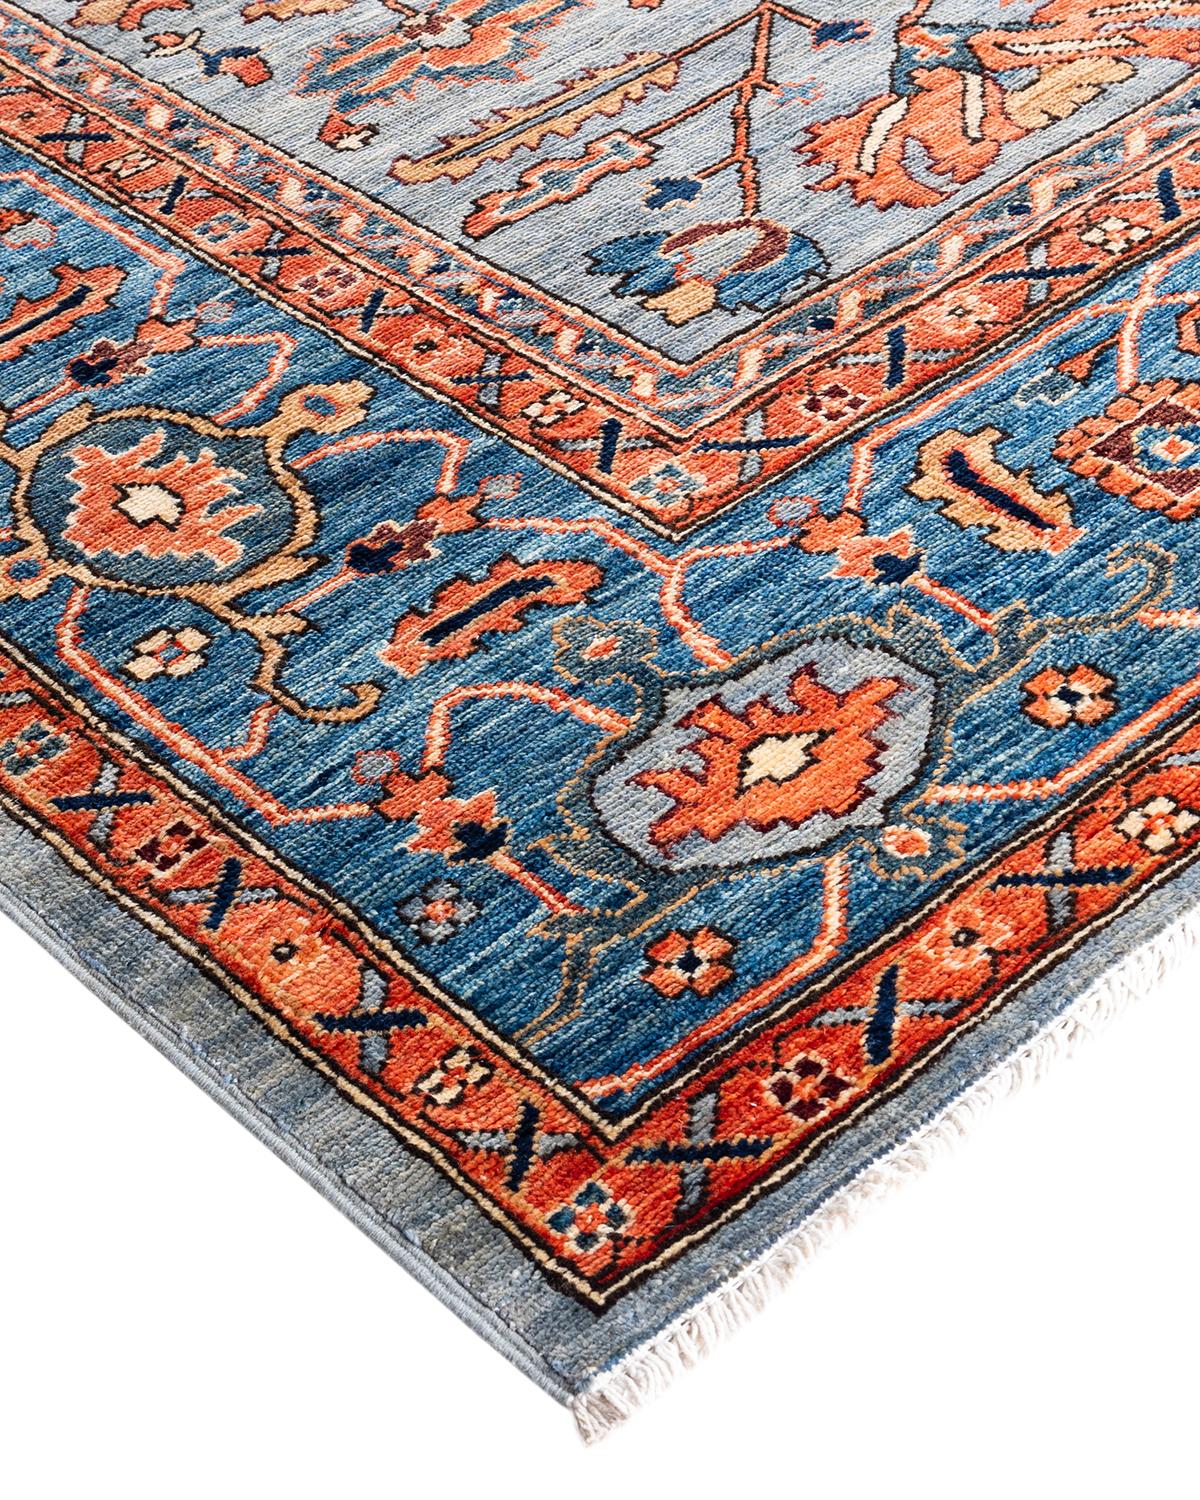 Persische Teppichkunst vom Feinsten inspirierte zu den satten Farben, den kunstvollen geometrischen Motiven und den botanischen Details der Serapi Collection. Mit bis zu 100 Knoten pro Zentimeter sind diese handgefertigten Teppiche ebenso langlebig